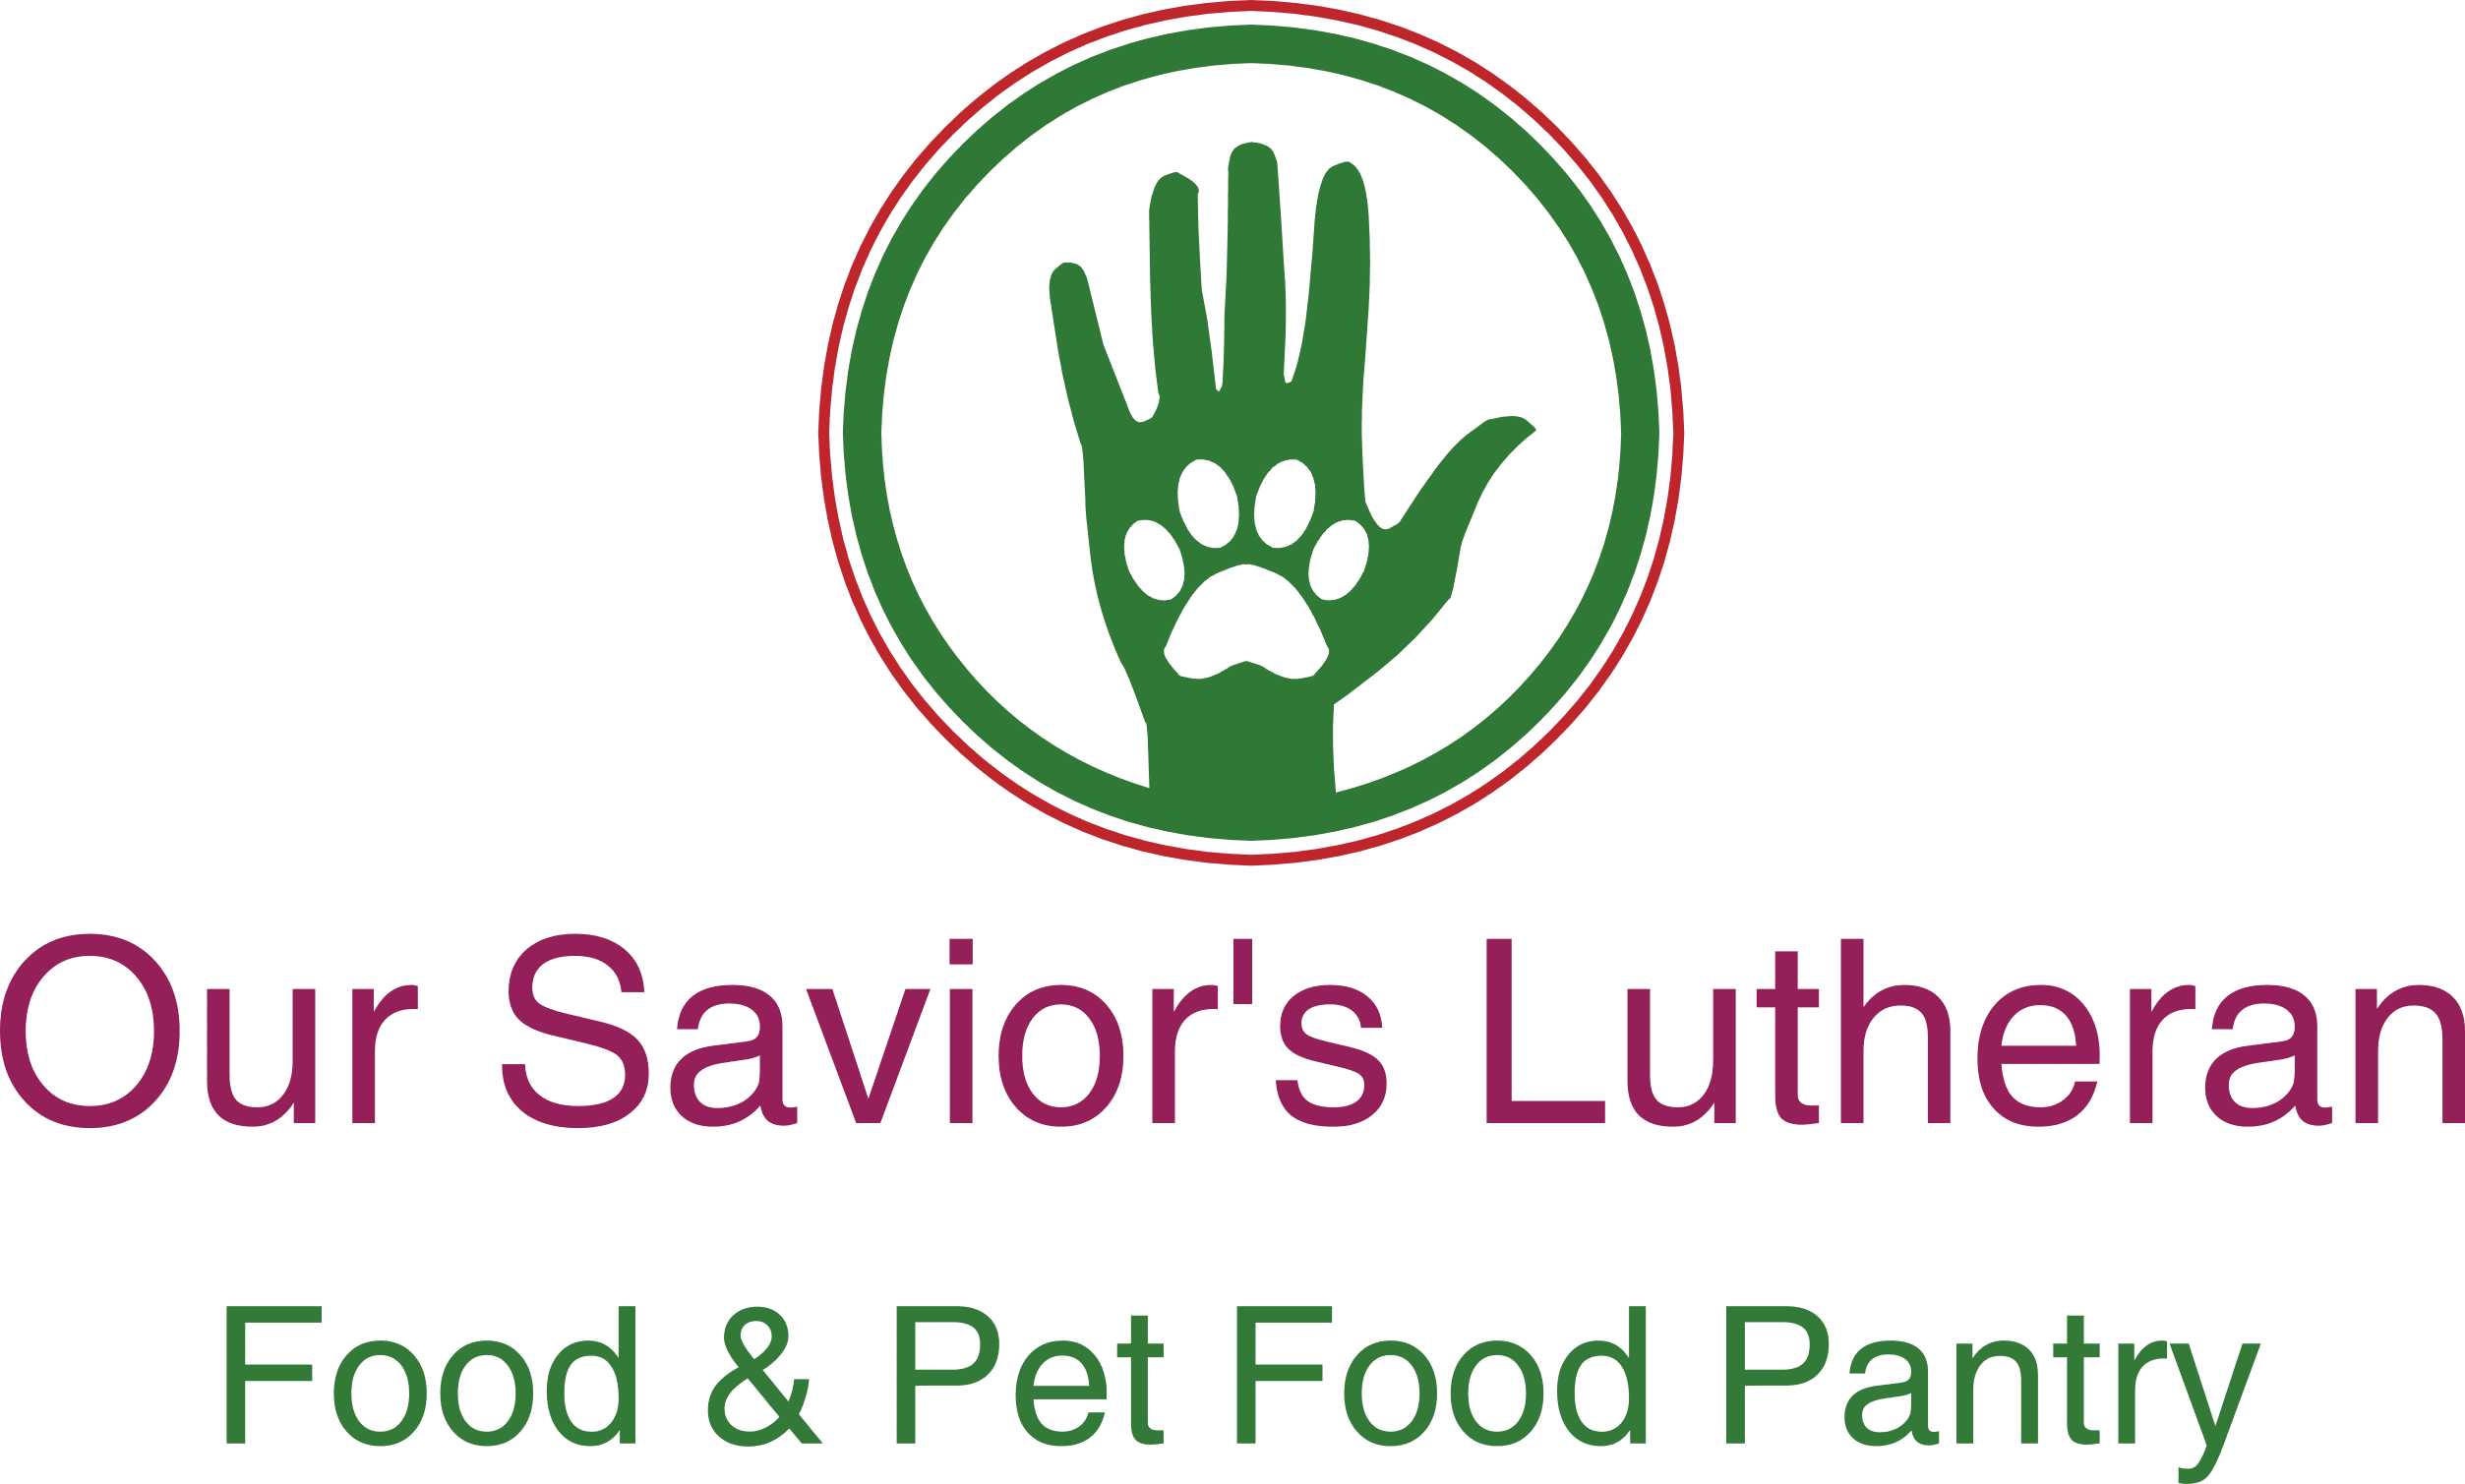 Our Savior's Lutheran Food & Pet Food Pantry